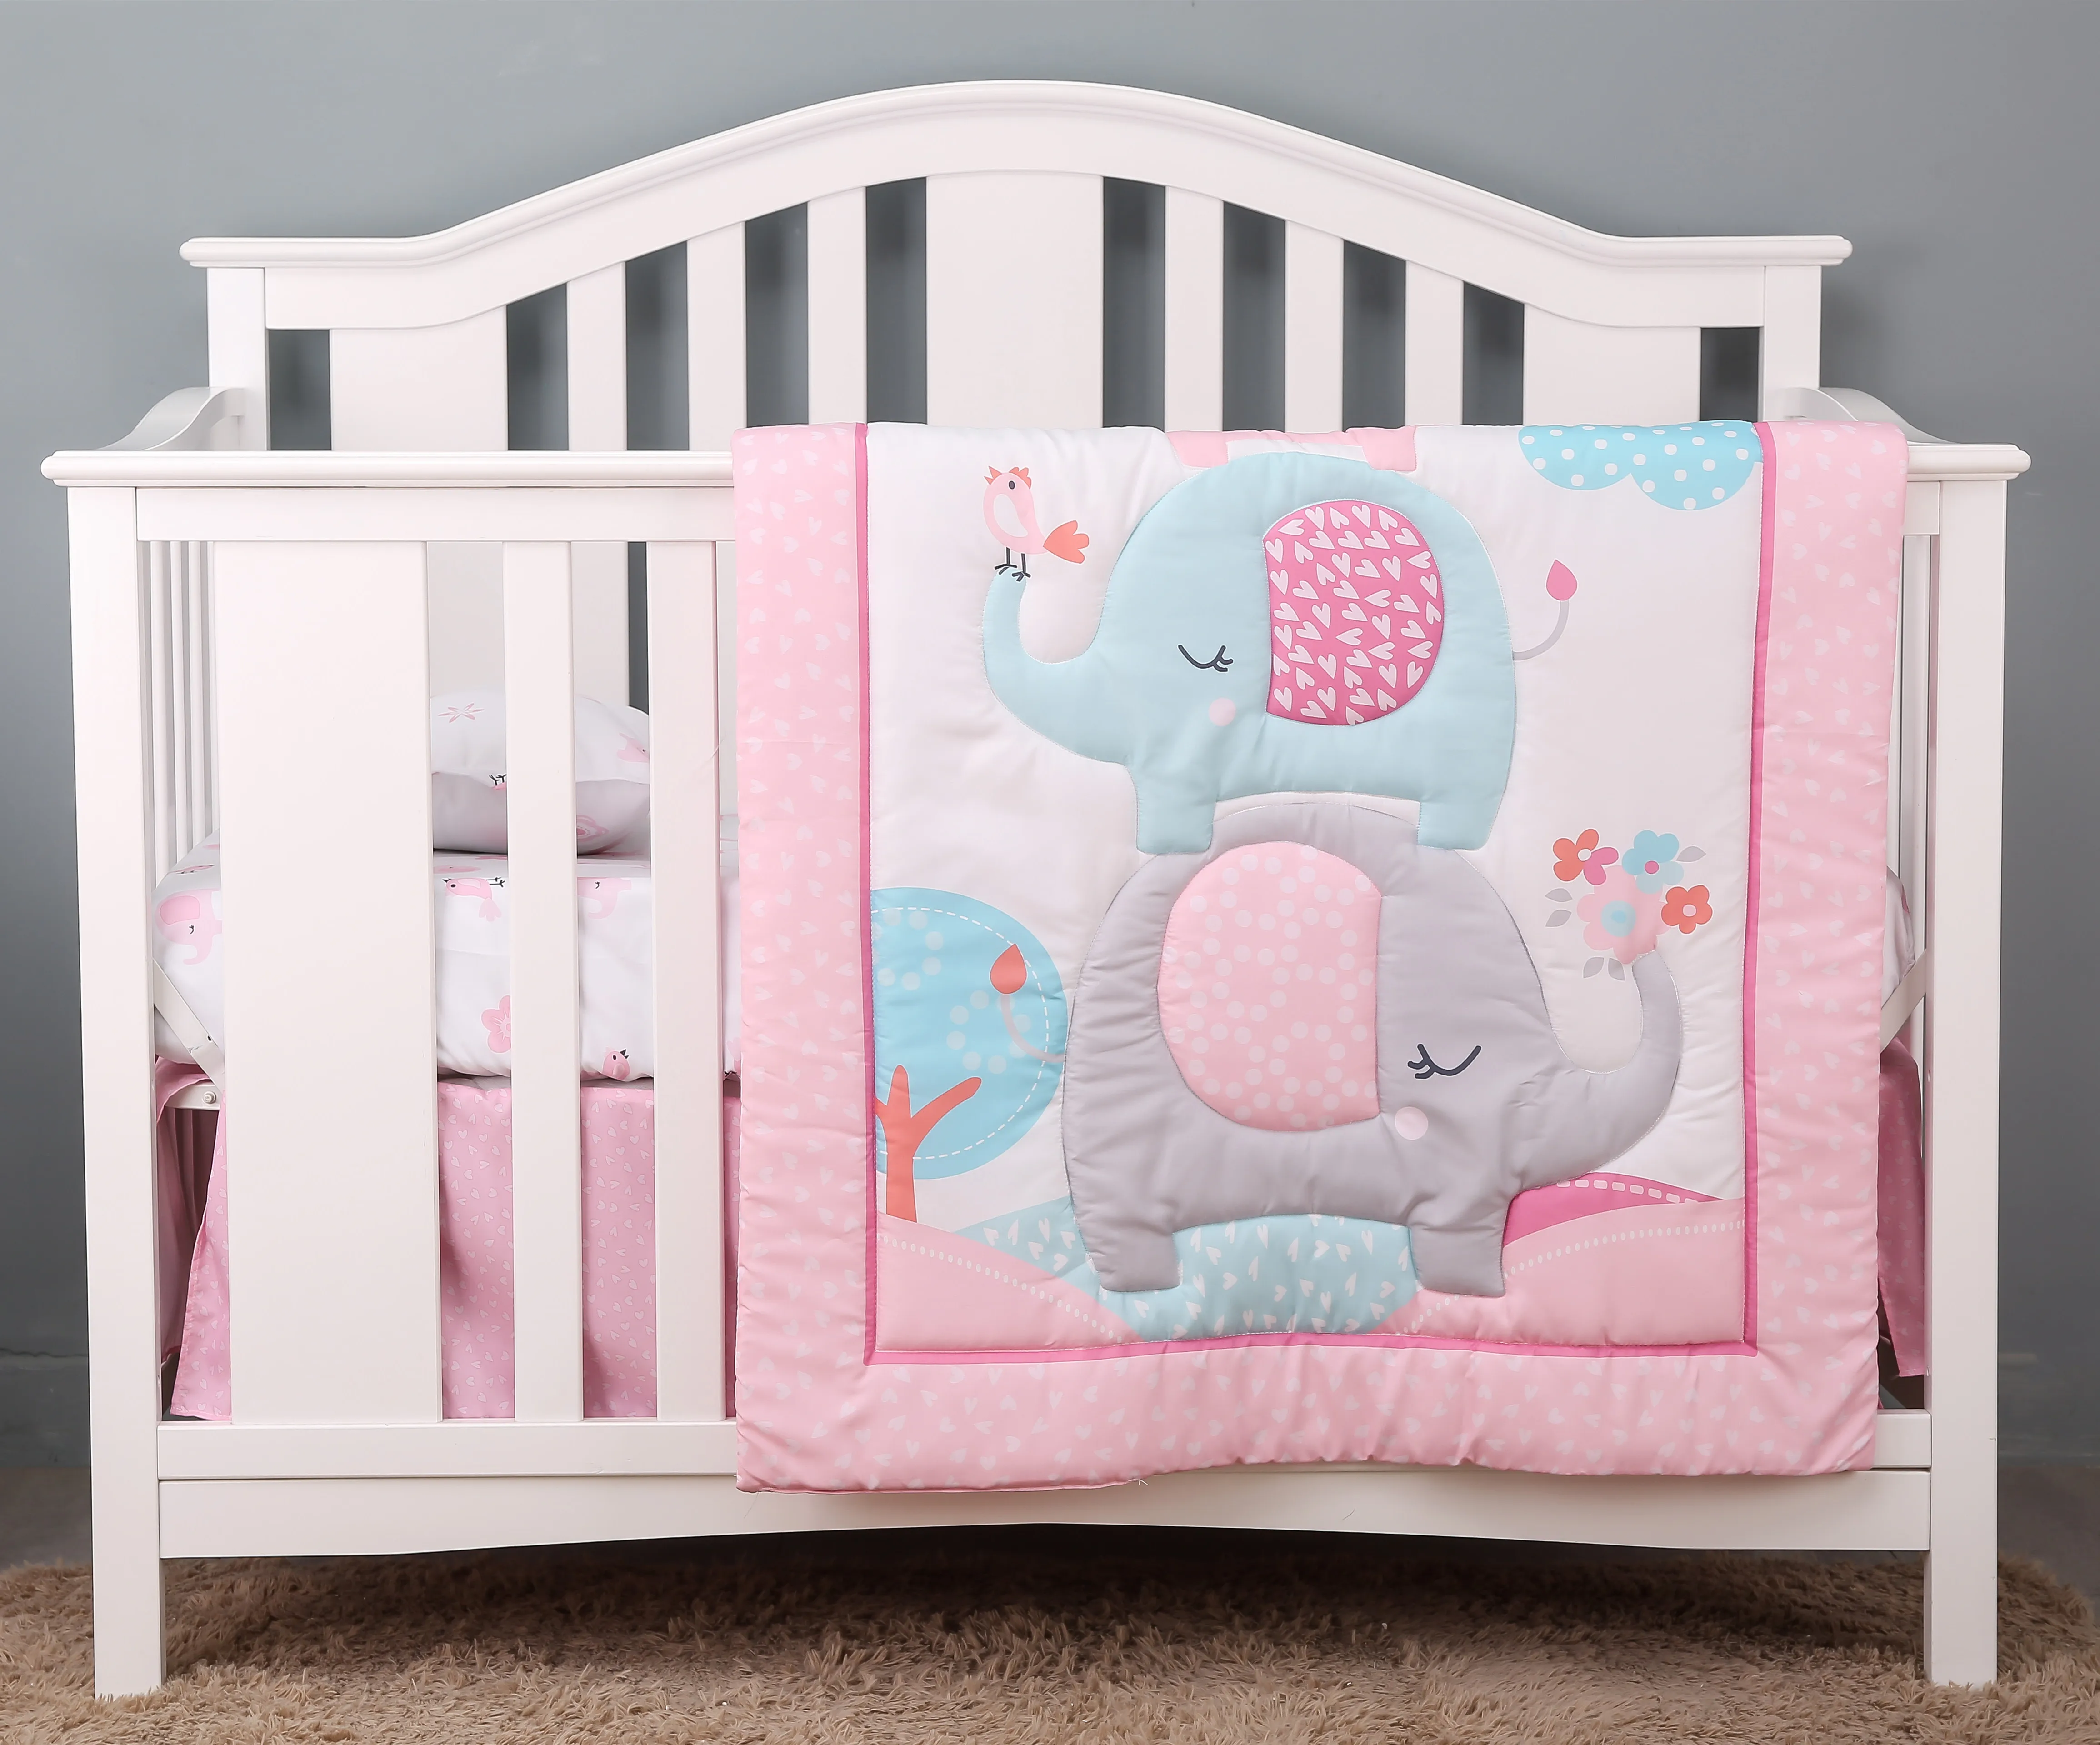 

3 pcs Baby Crib Bedding Set for Girls flower elephant hot sale including quilt, crib sheet, crib skirt